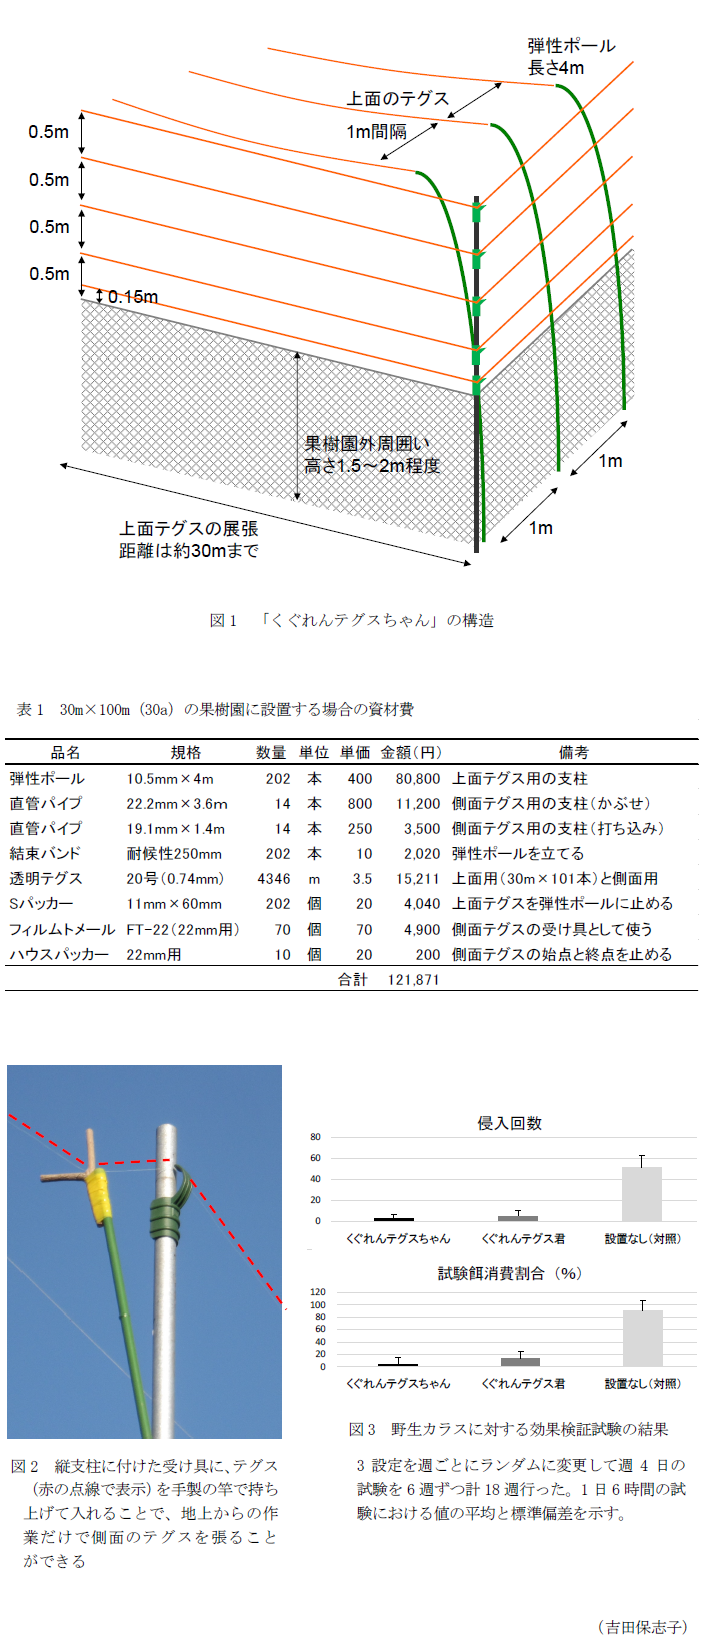 図1 「くぐれんテグスちゃん」の構造,表1 30m×100m(30a)の果樹園に設置する場合の資材費,図2 縦支柱に付けた受け具に、テグス(赤の点線で表示)を手製の竿で持ち上げて入れることで、地上からの作業だけで側面のテグスを張ることができる,図3 野生カラスに対する効果検証試験の結果